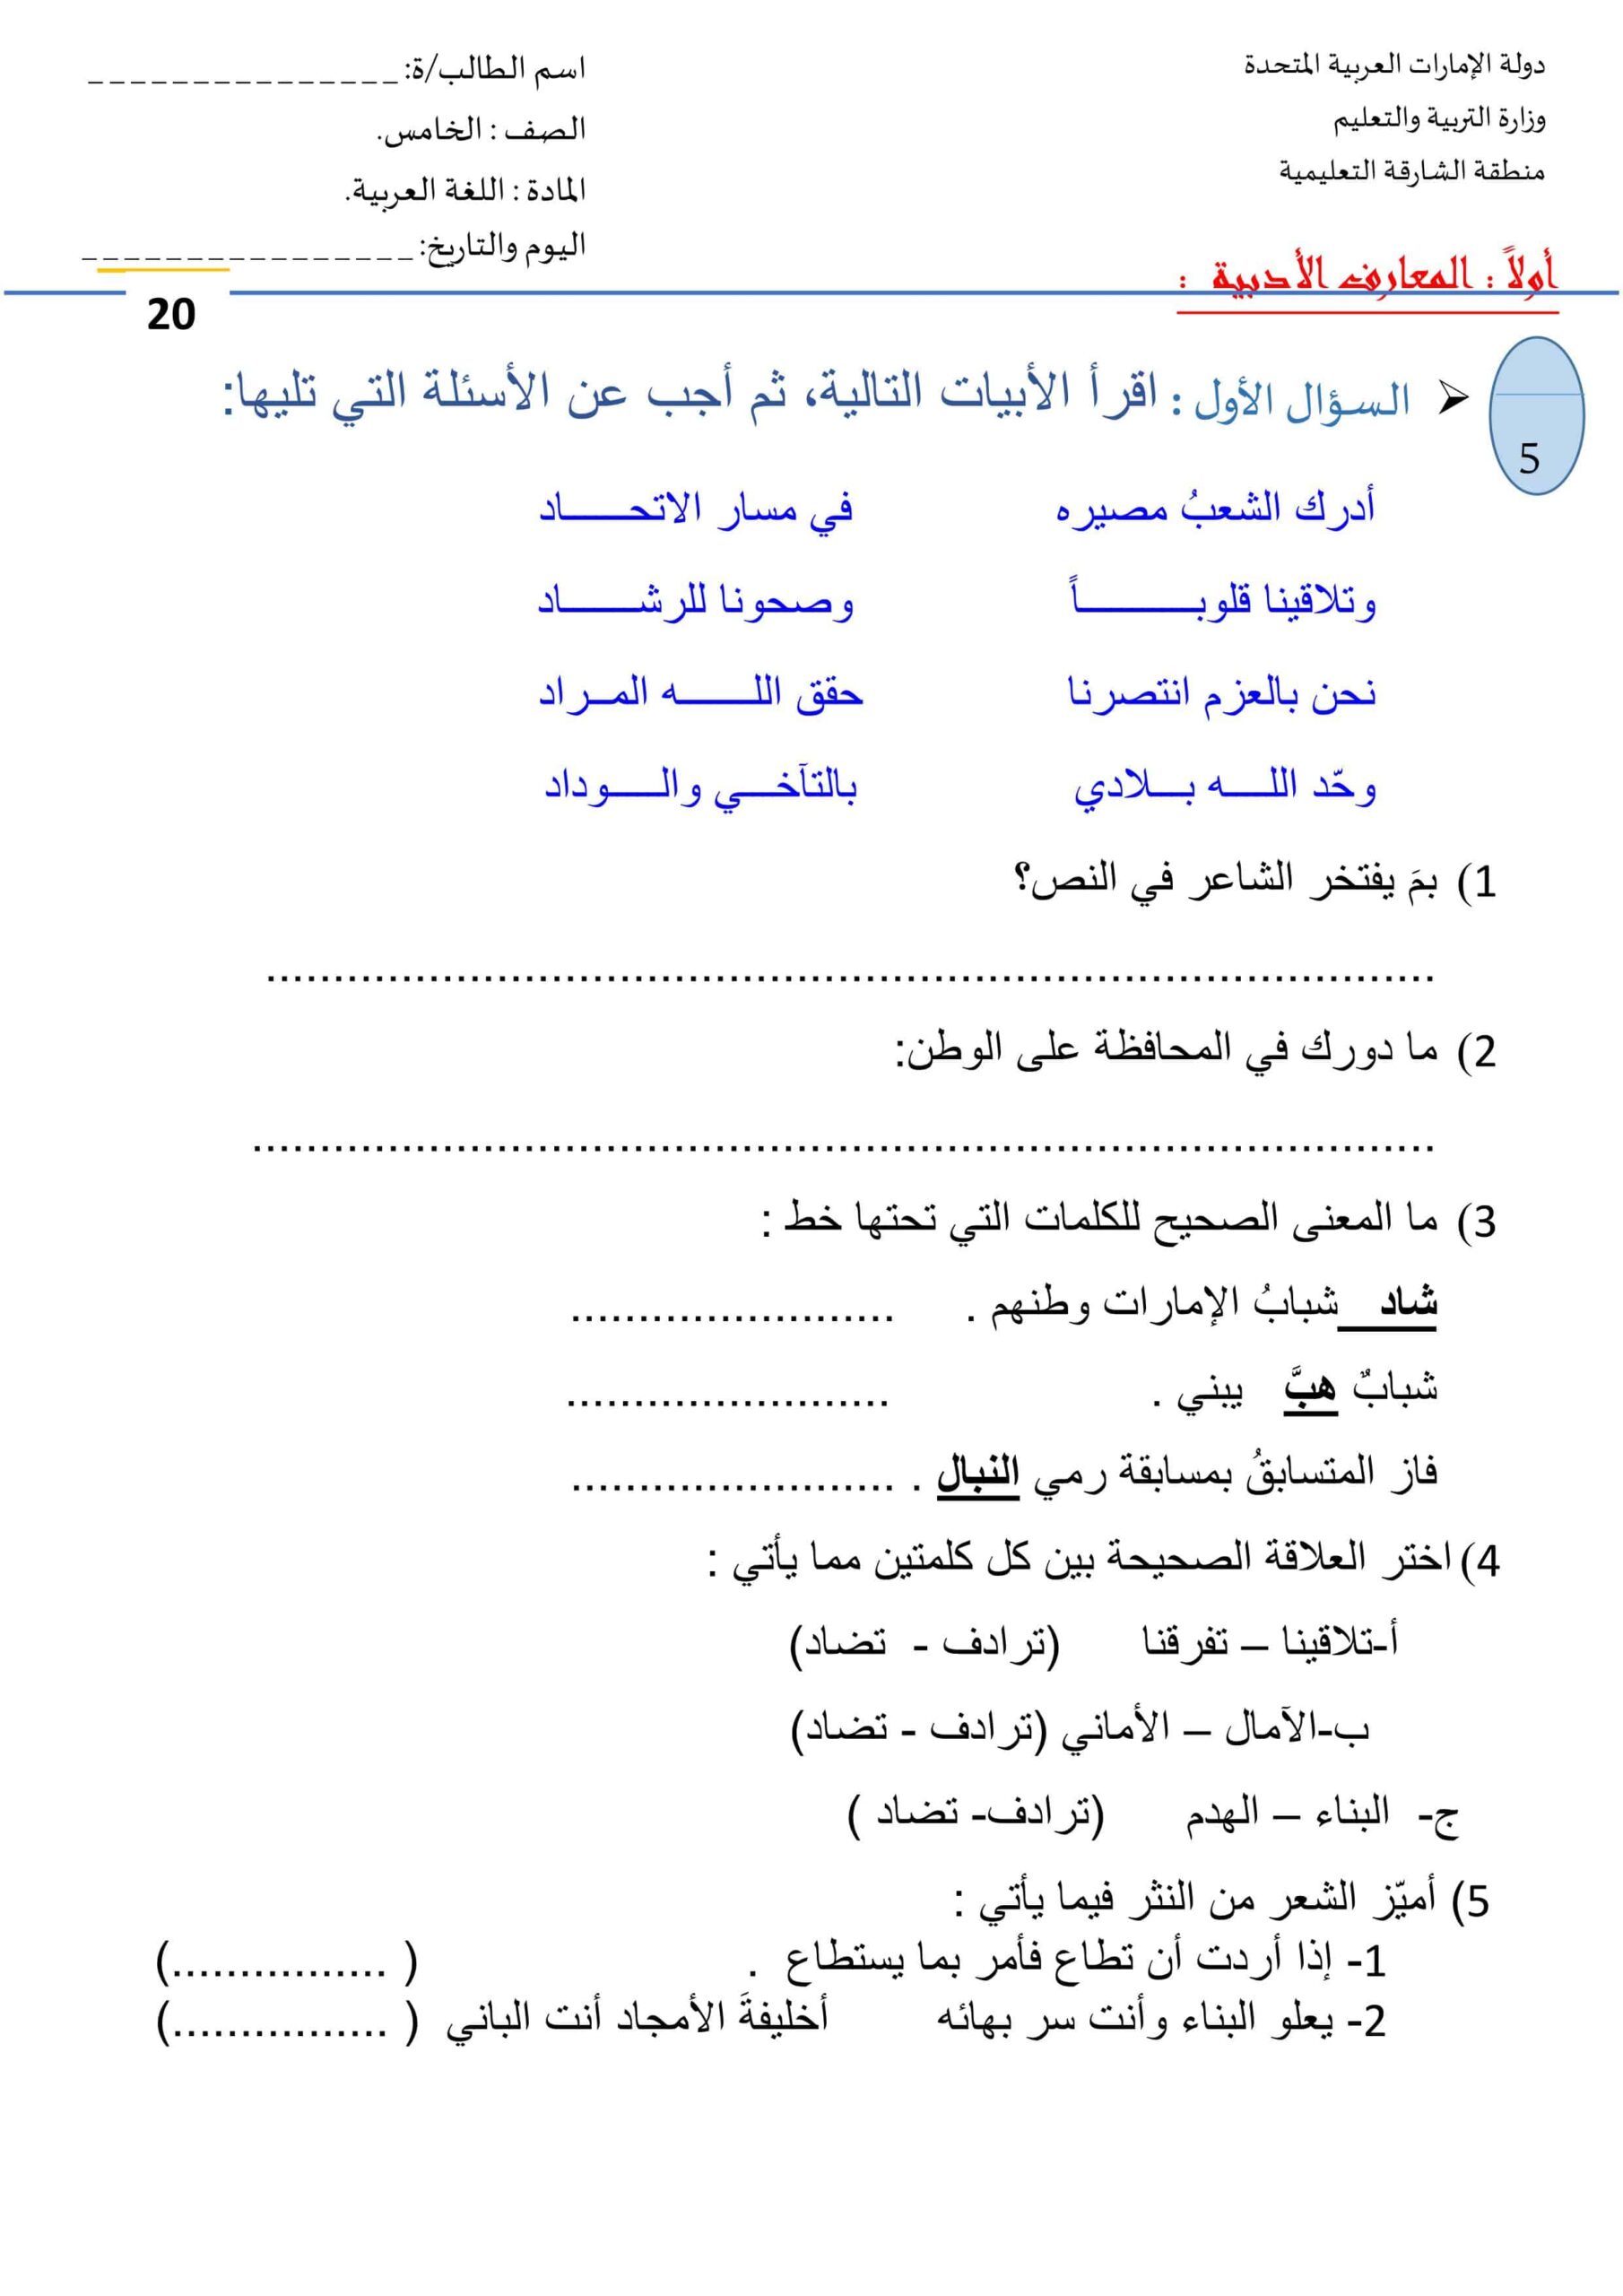 اختبار تدريبي للامتحان النهائي اللغة العربية الصف الخامس